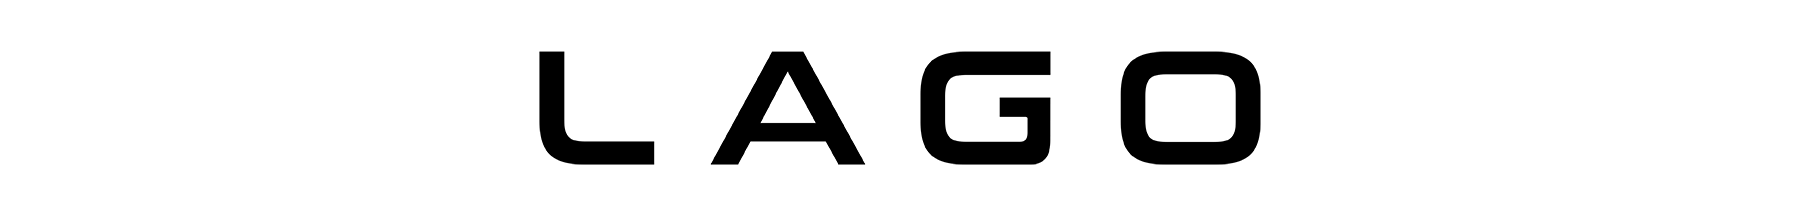 Lago logo